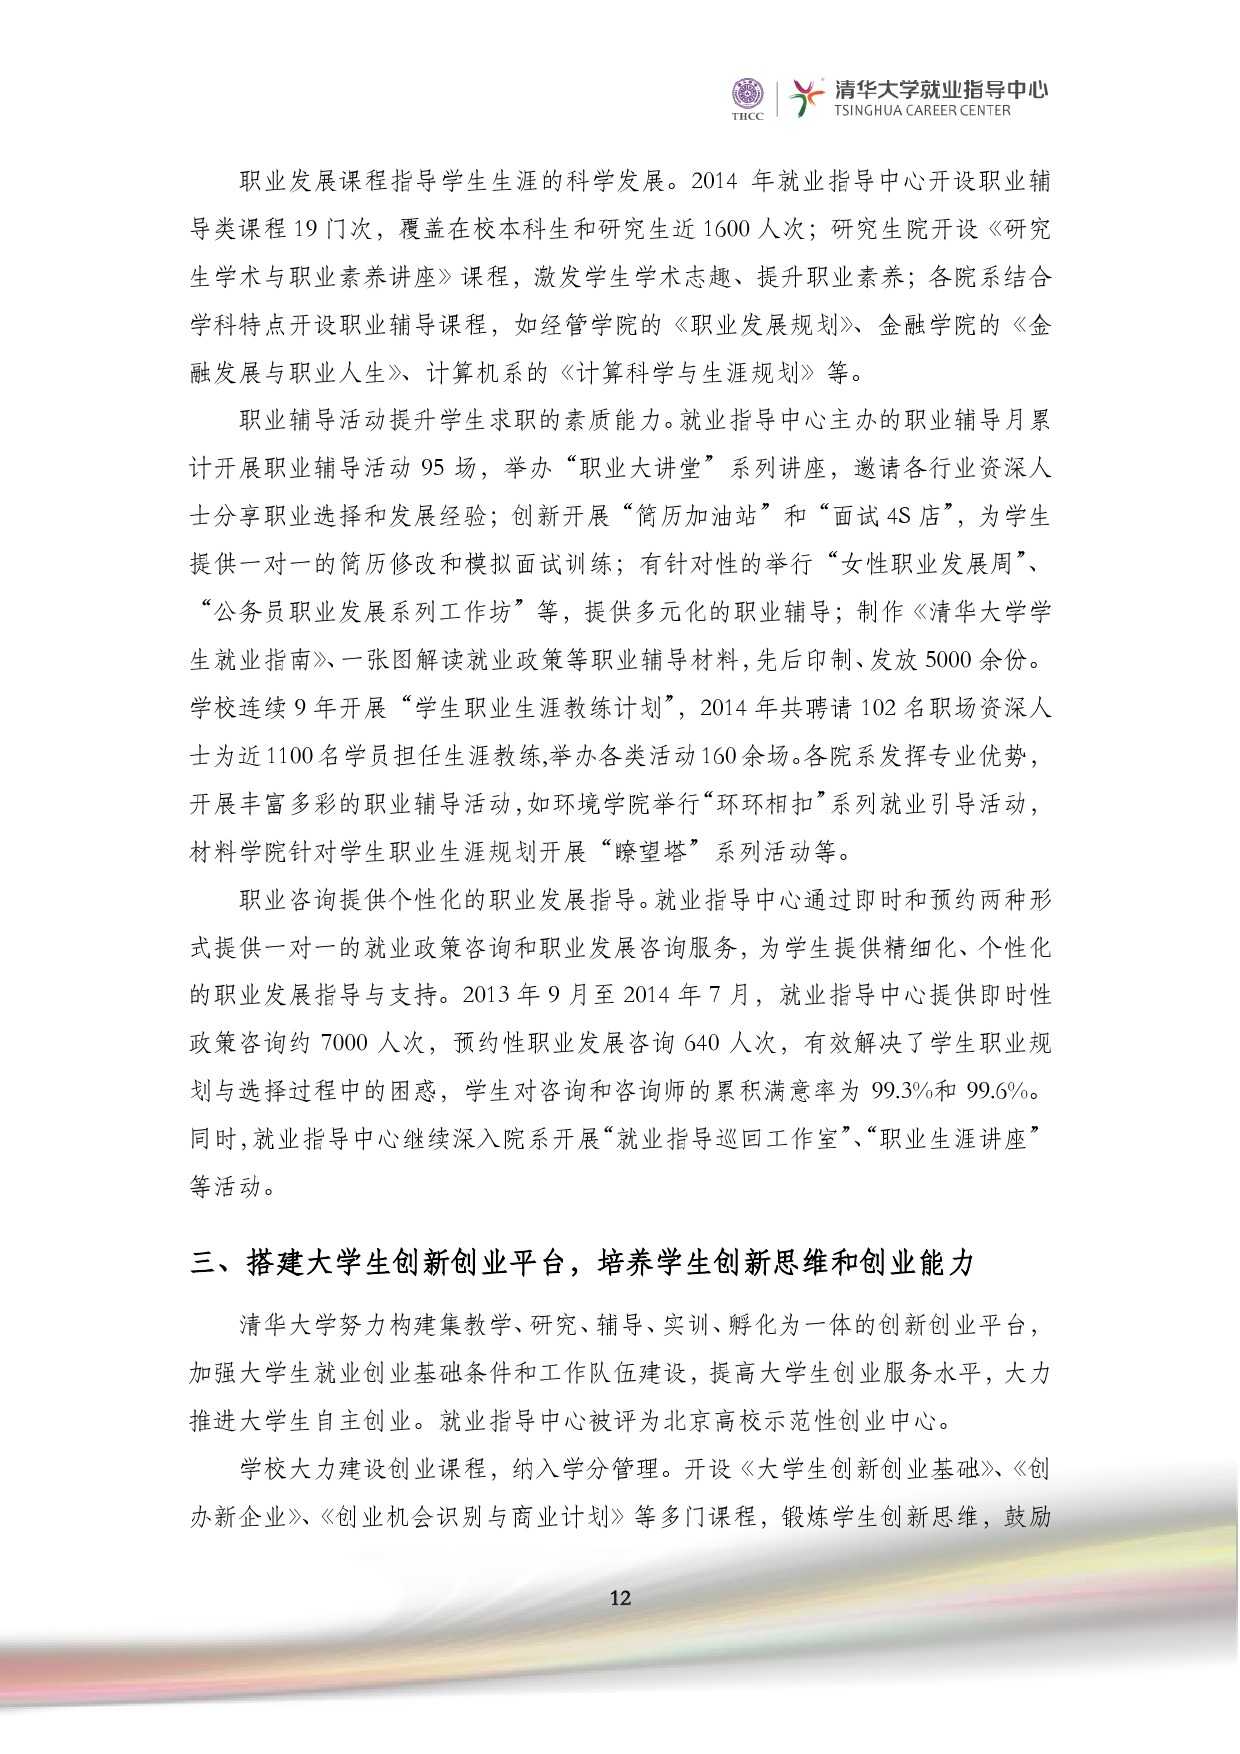 清華大學2014 年畢業生就業質量報告_000014